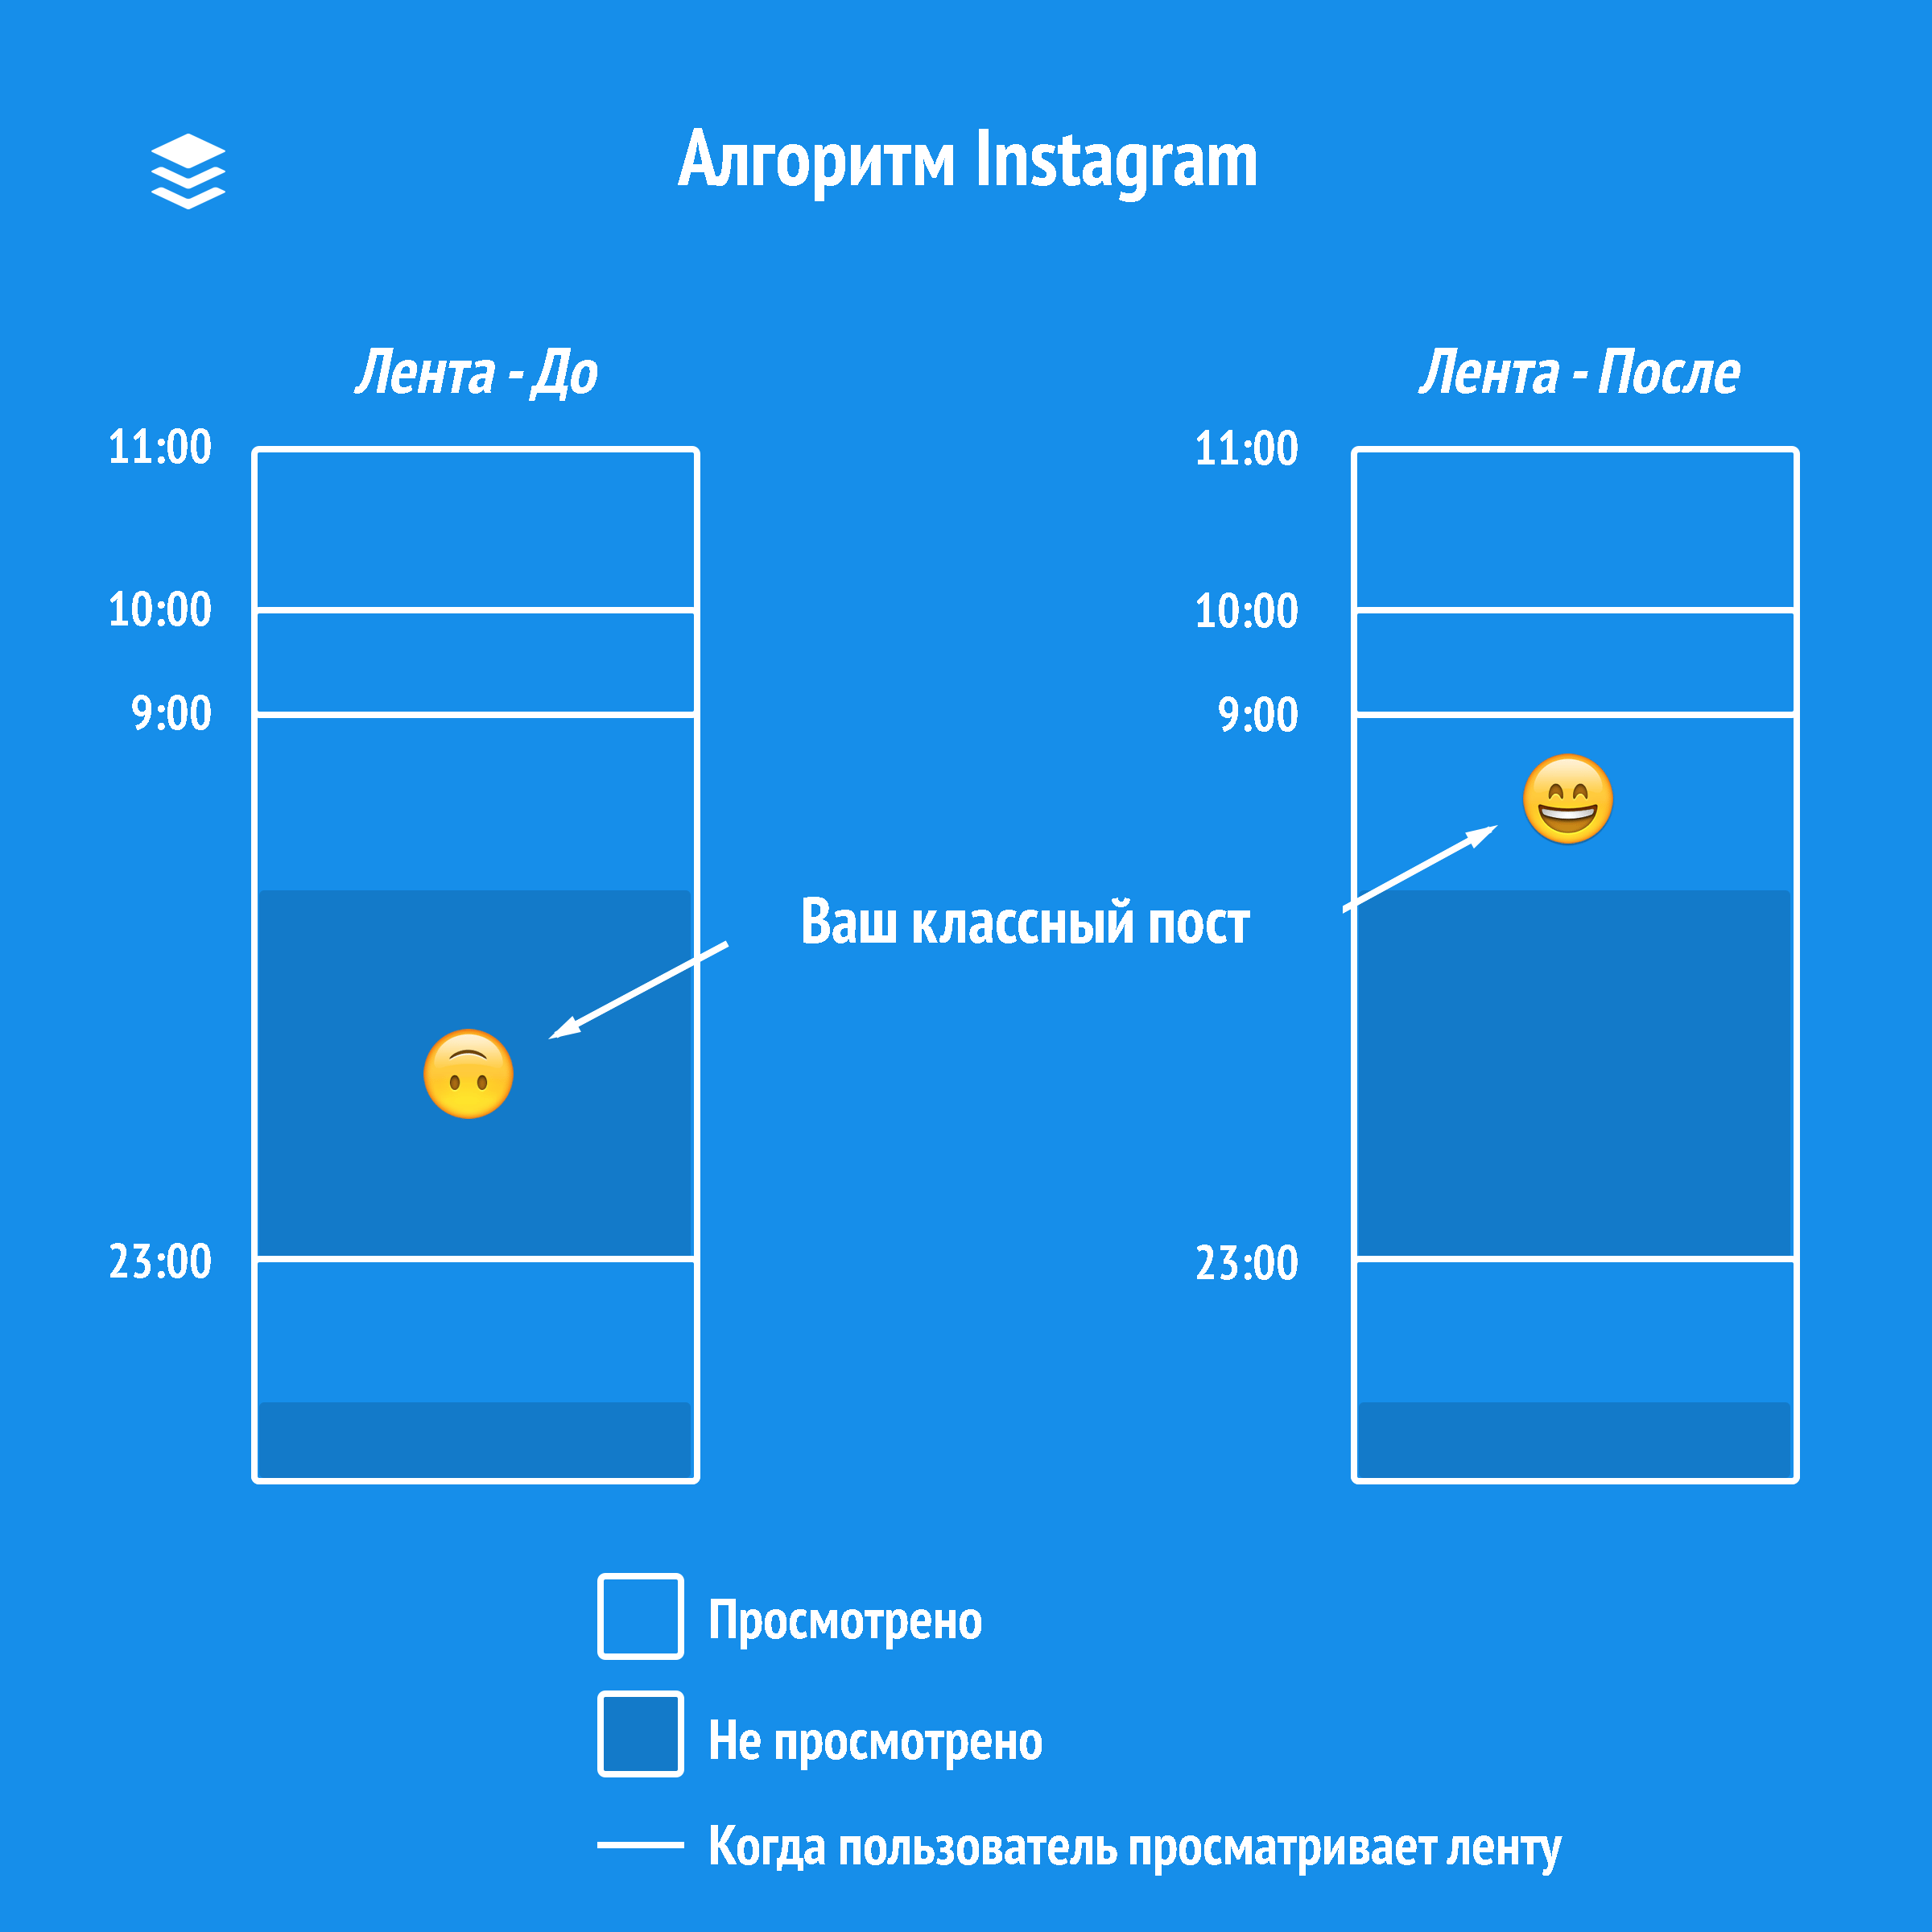 Как работает алгоритм ленты Instagram 